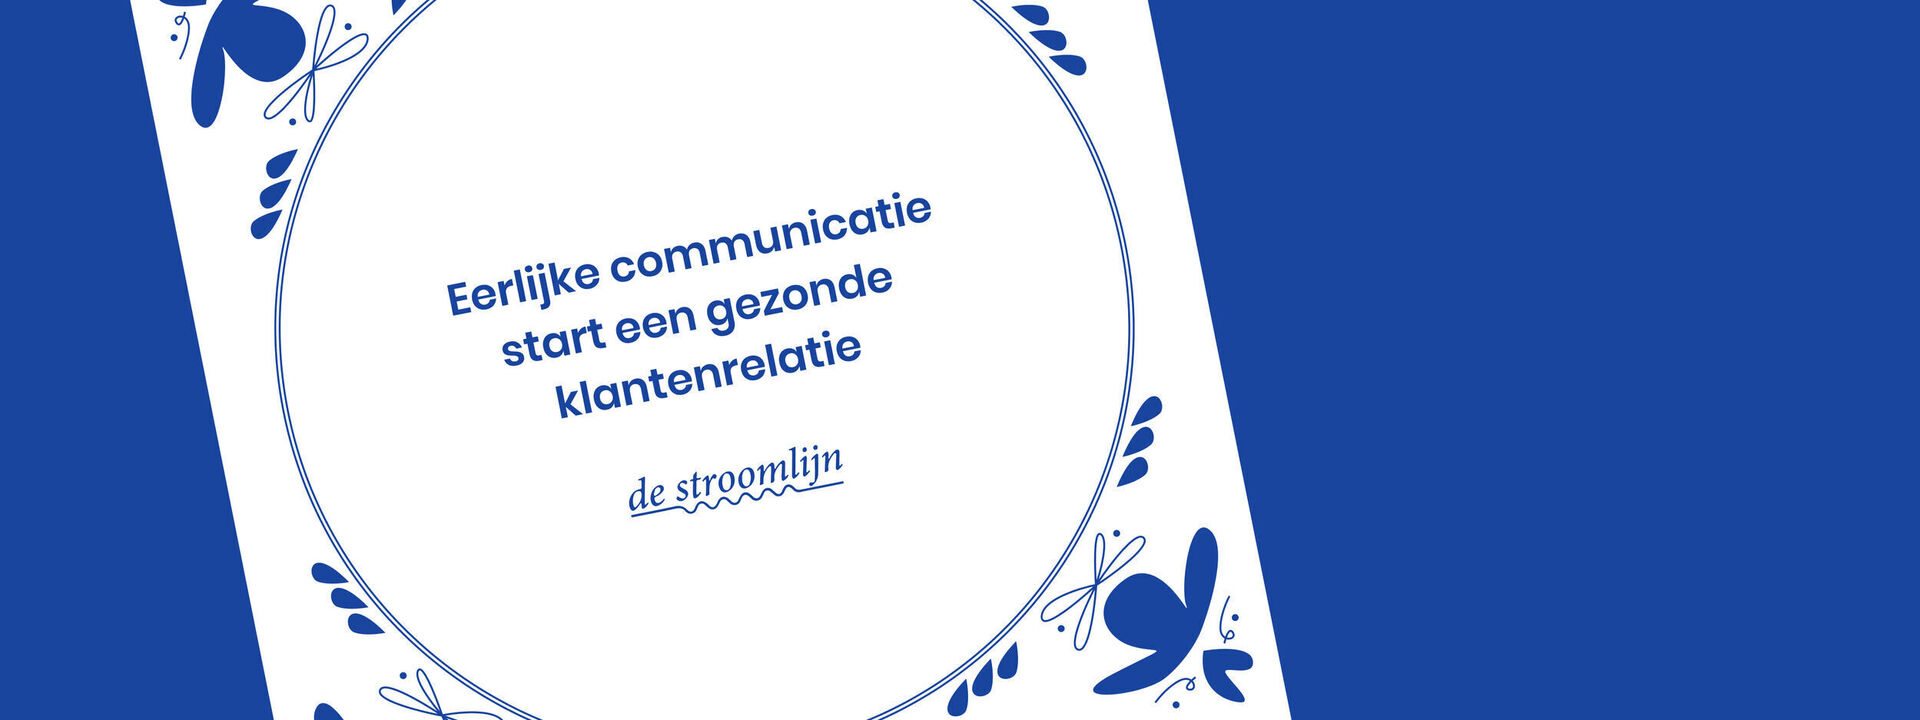 Eerlijke communicatie start een gezonde klantenrelatie 